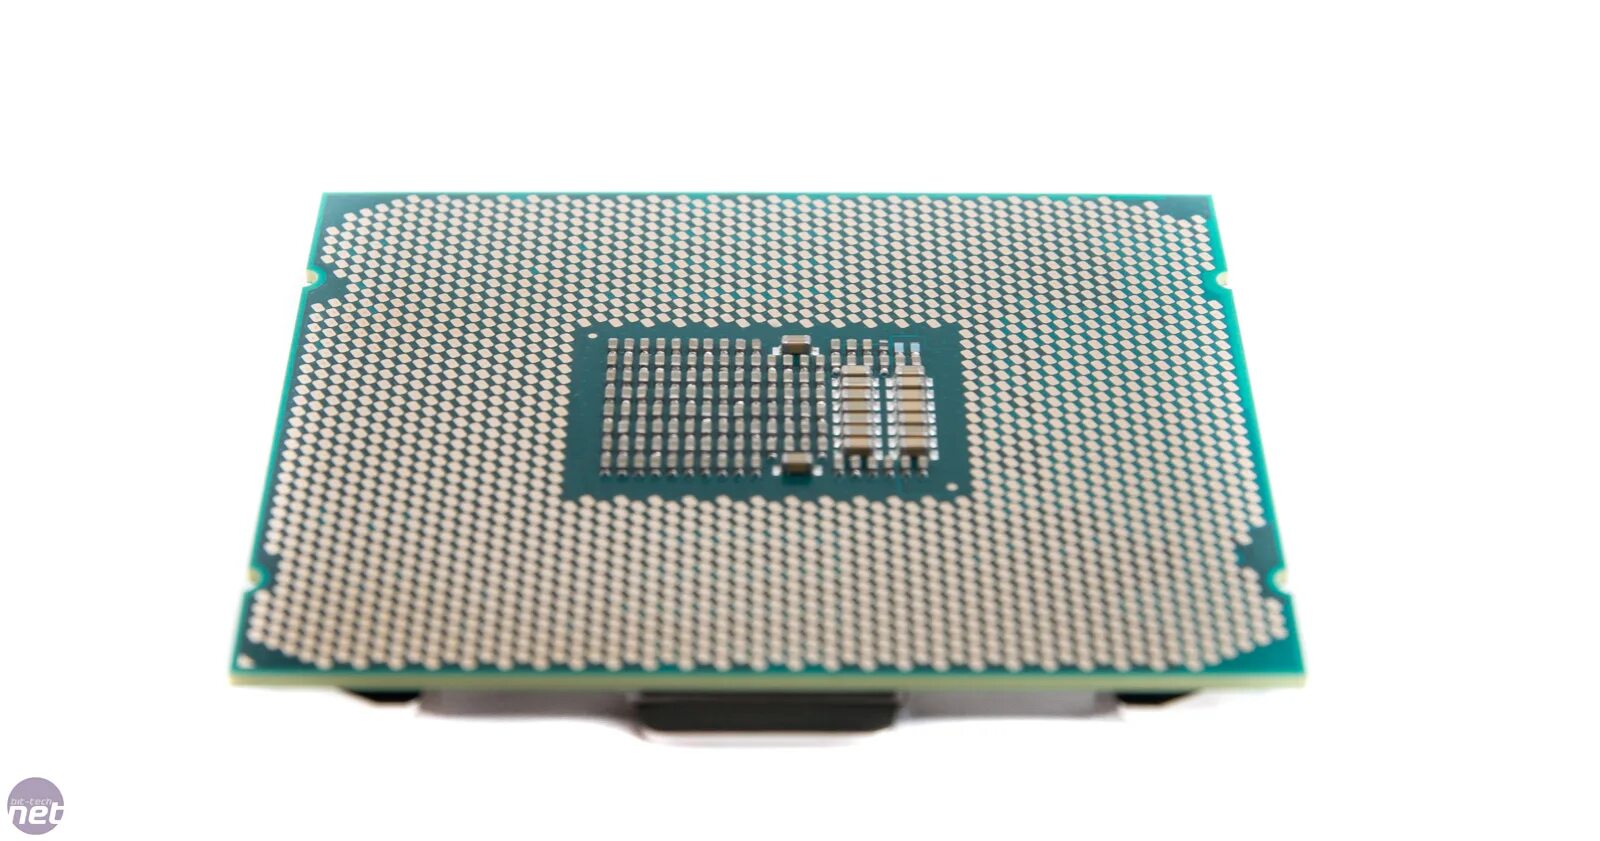 Core i9 7900x. Intel i9 7900. Intel Core i9-7920x. Intel Core 2 extreme x7900 CPU. Cpu 16 cores